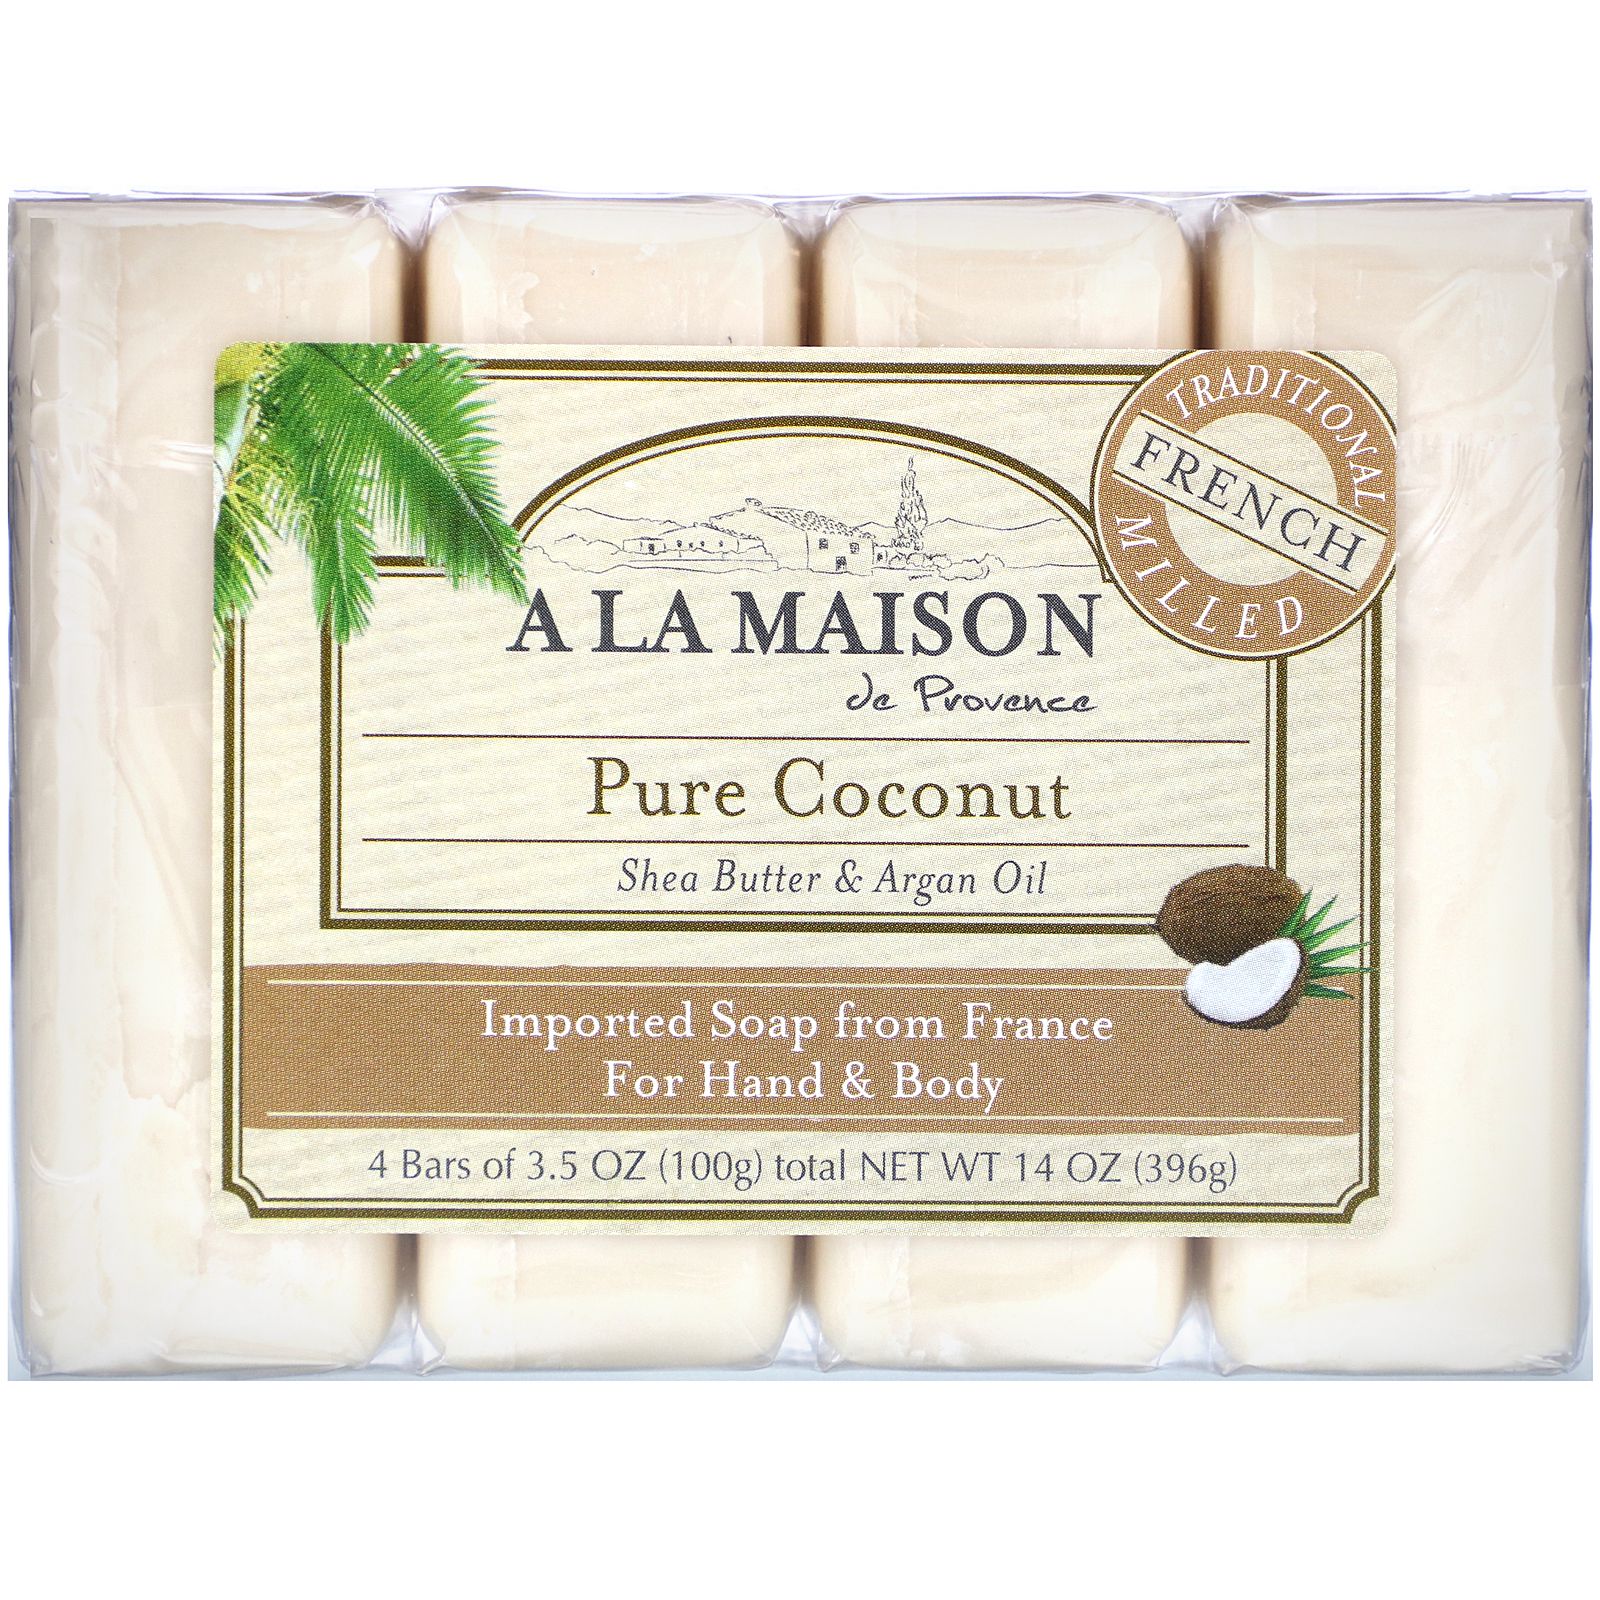 A La Maison de Provence Мыло для рук & тела Чистый кокос 4 бруска по 3.5 унции